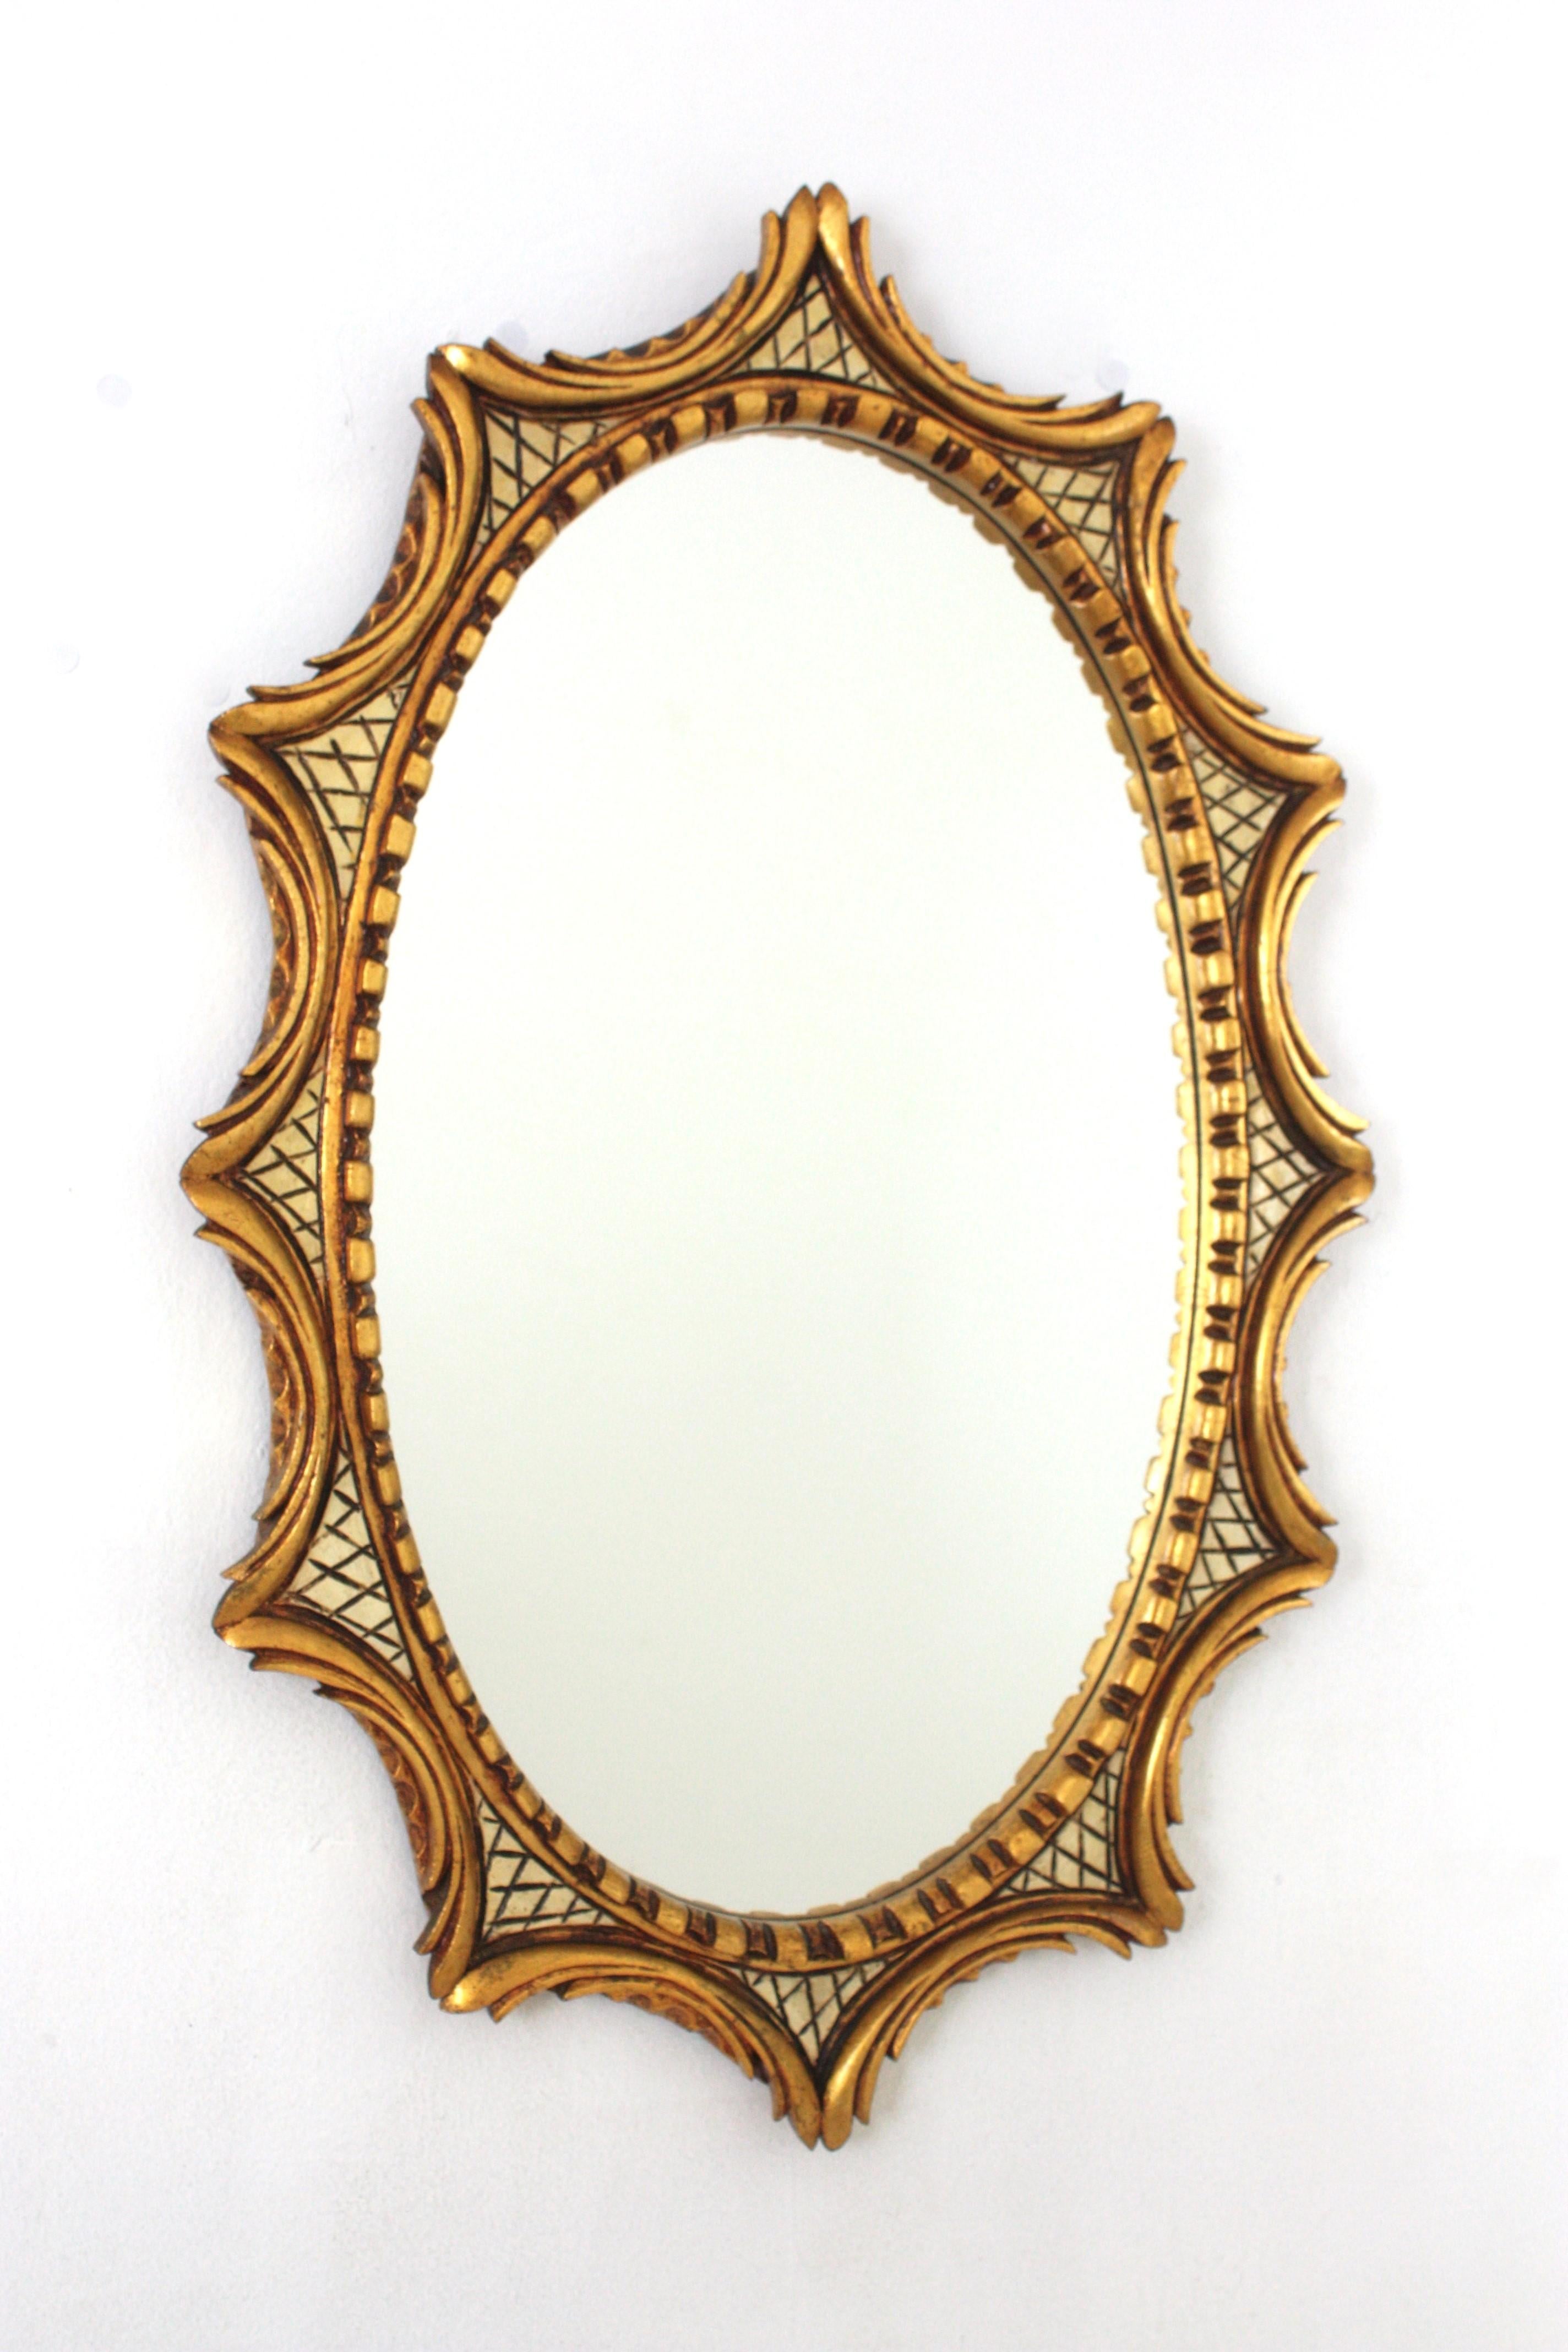 Miroir ovale en bois doré de style régence hollywoodienne, Espagne, années 1950-1960.
Miroir mural ovale doré unique en son genre, encadré en forme d'étoile ou de soleil. Les détails de la volute inspirée par le feuillage sont joliment sculptés et